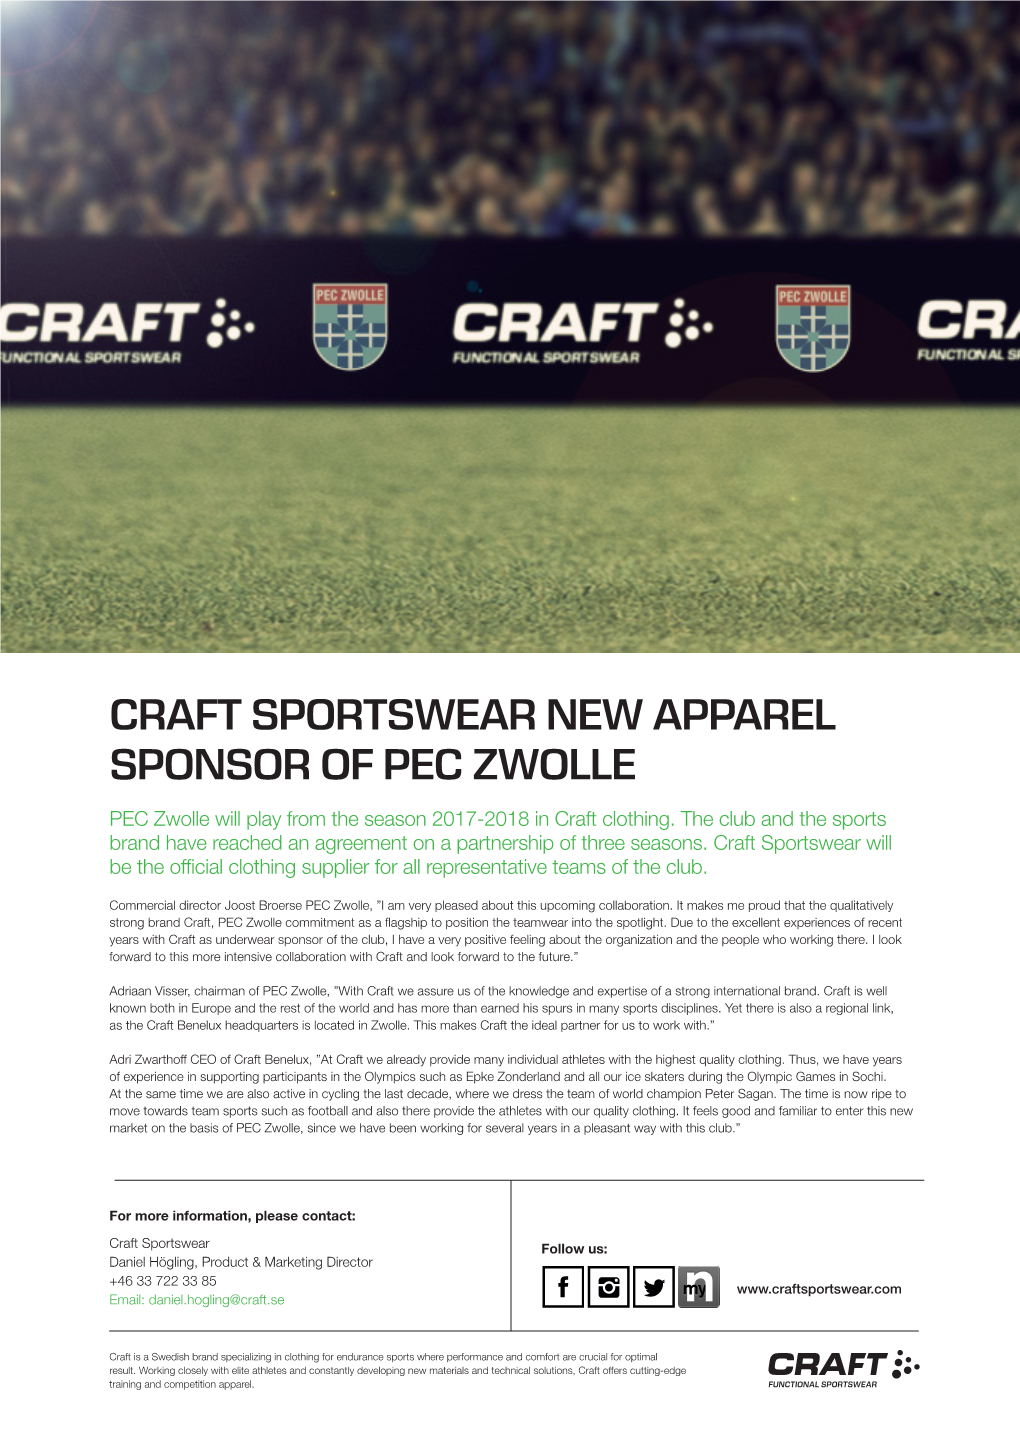 Craft Sportswear New Apparel Sponsor of Pec Zwolle